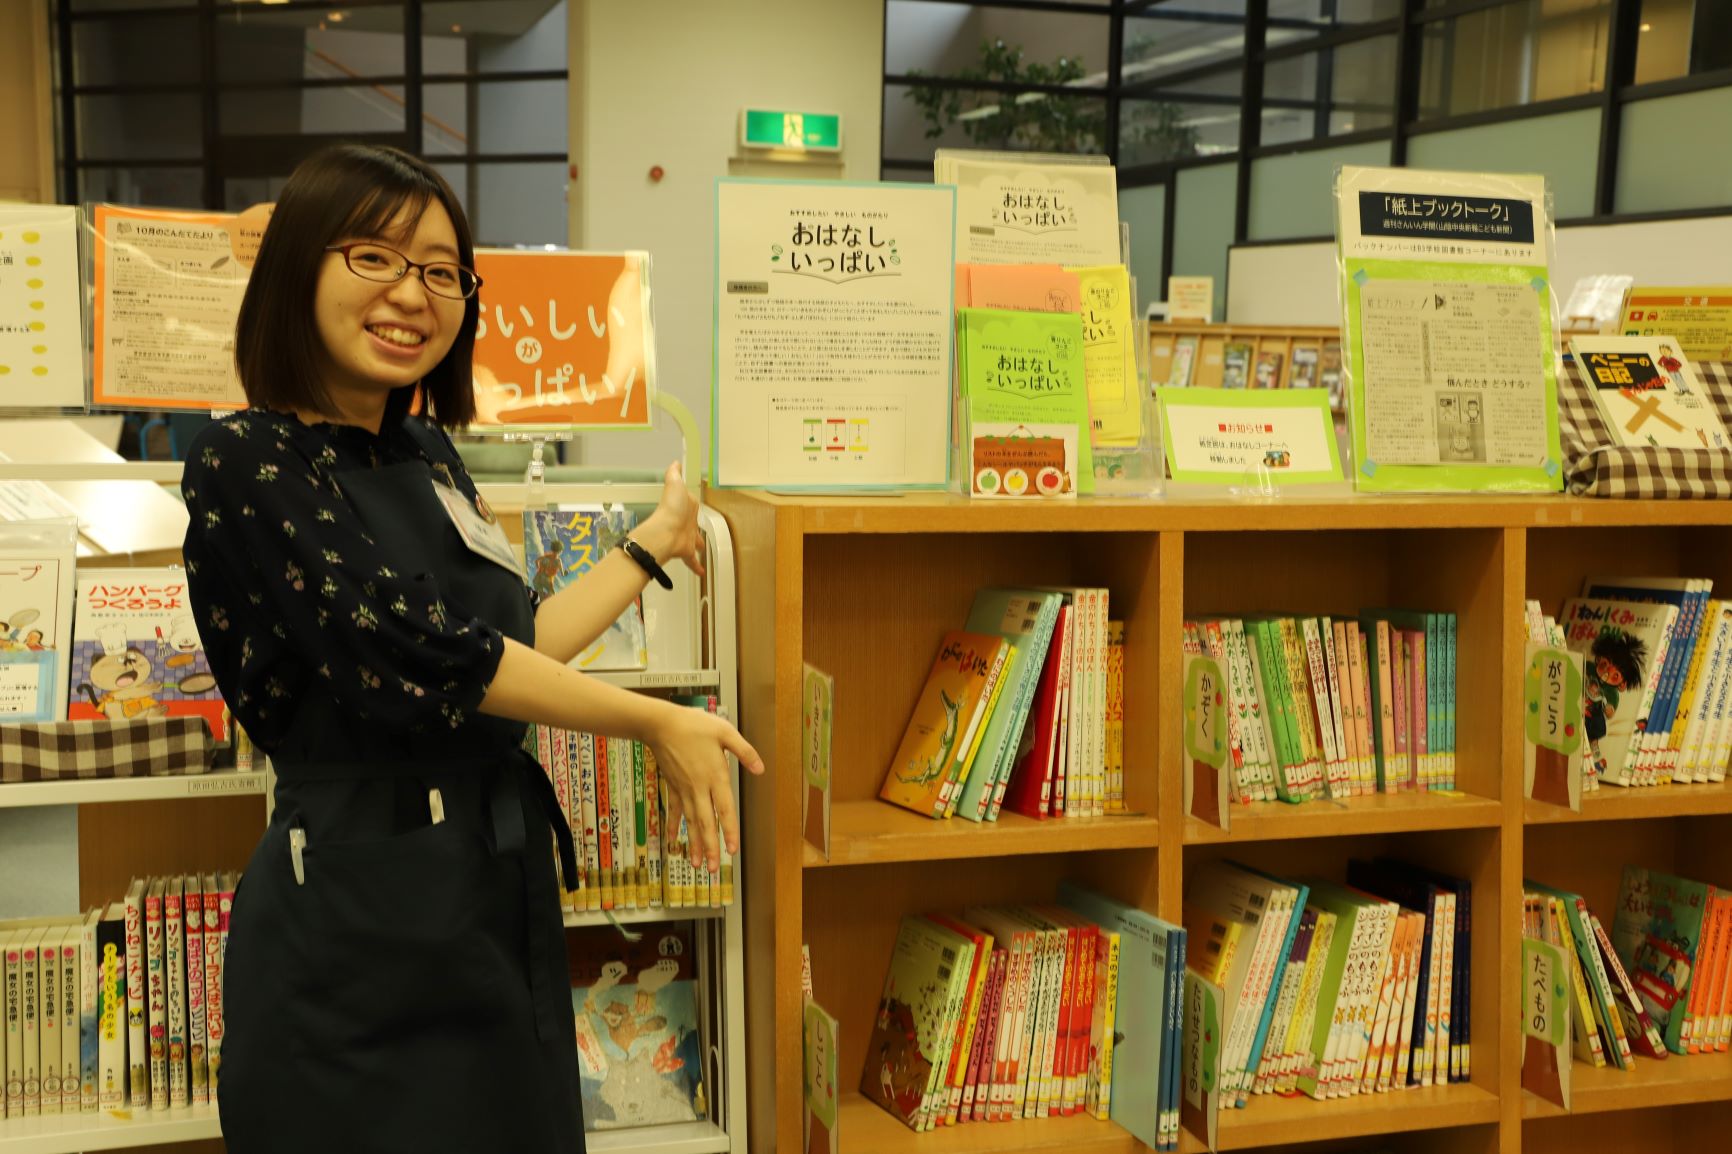 松江市立中央図書館館内に設けられたこども読書コーナーと、コーナーを紹介する女性職員の写真